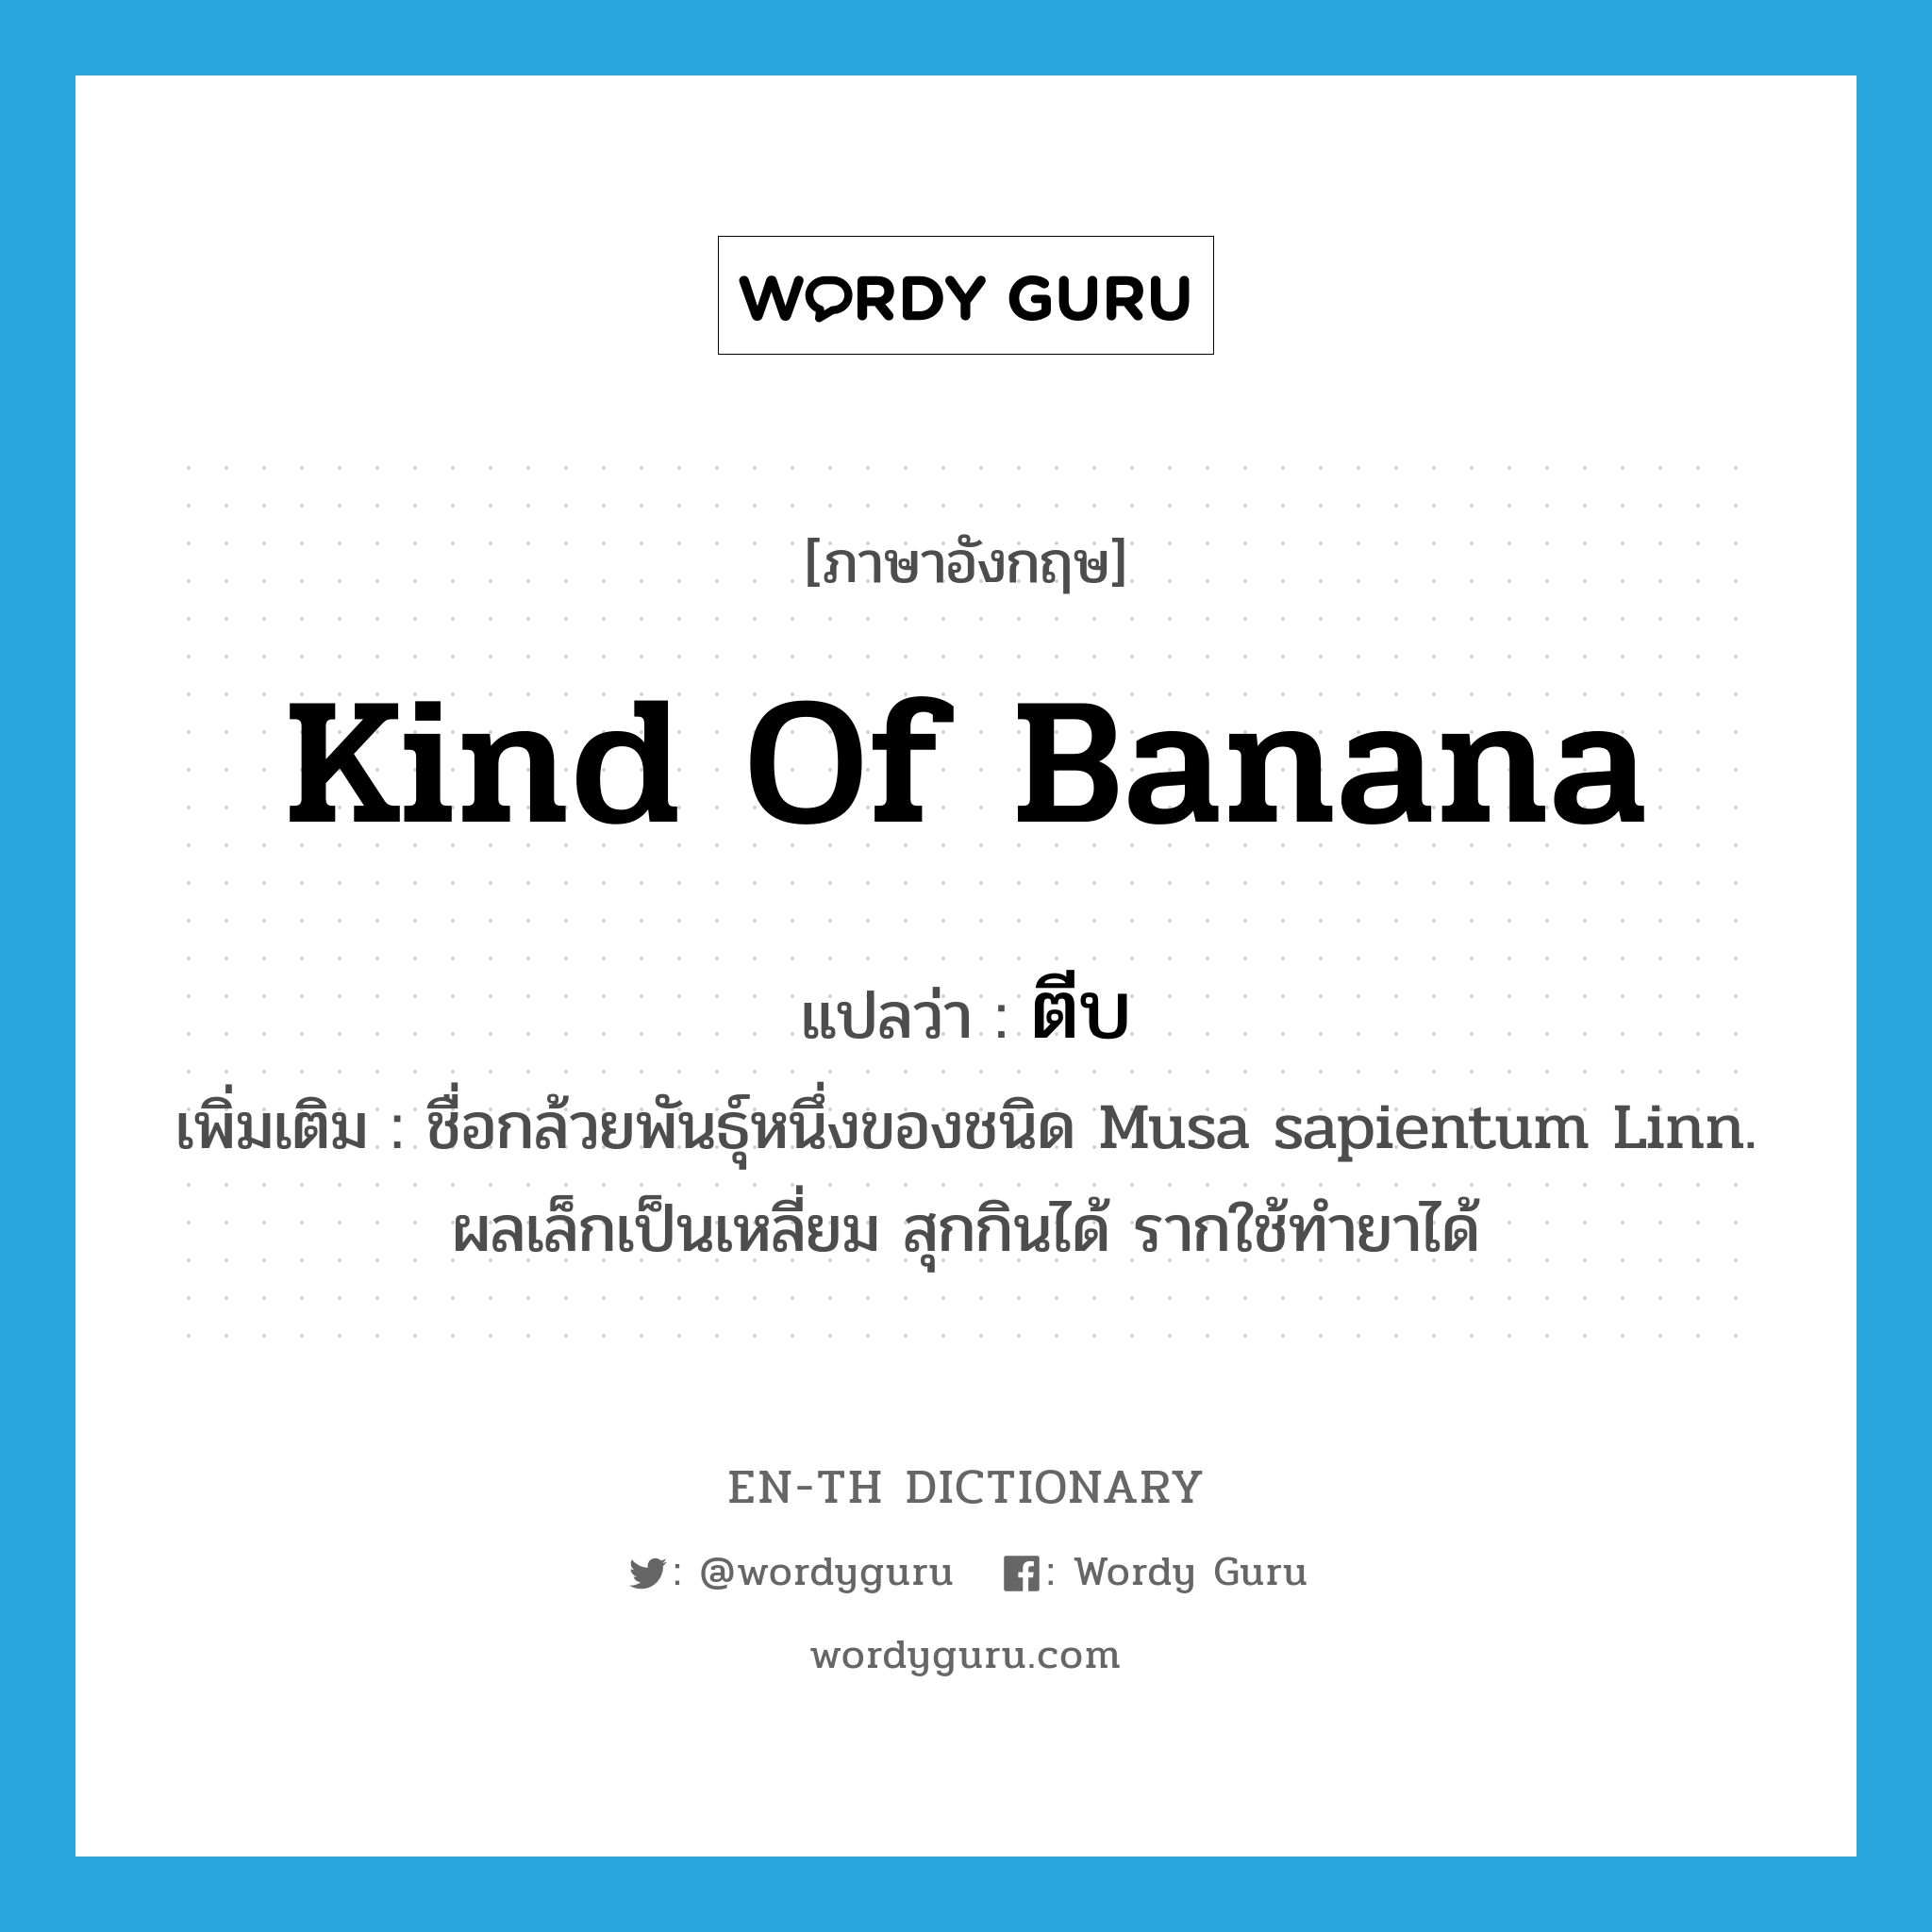 kind of banana แปลว่า?, คำศัพท์ภาษาอังกฤษ kind of banana แปลว่า ตีบ ประเภท N เพิ่มเติม ชื่อกล้วยพันธุ์หนึ่งของชนิด Musa sapientum Linn. ผลเล็กเป็นเหลี่ยม สุกกินได้ รากใช้ทำยาได้ หมวด N